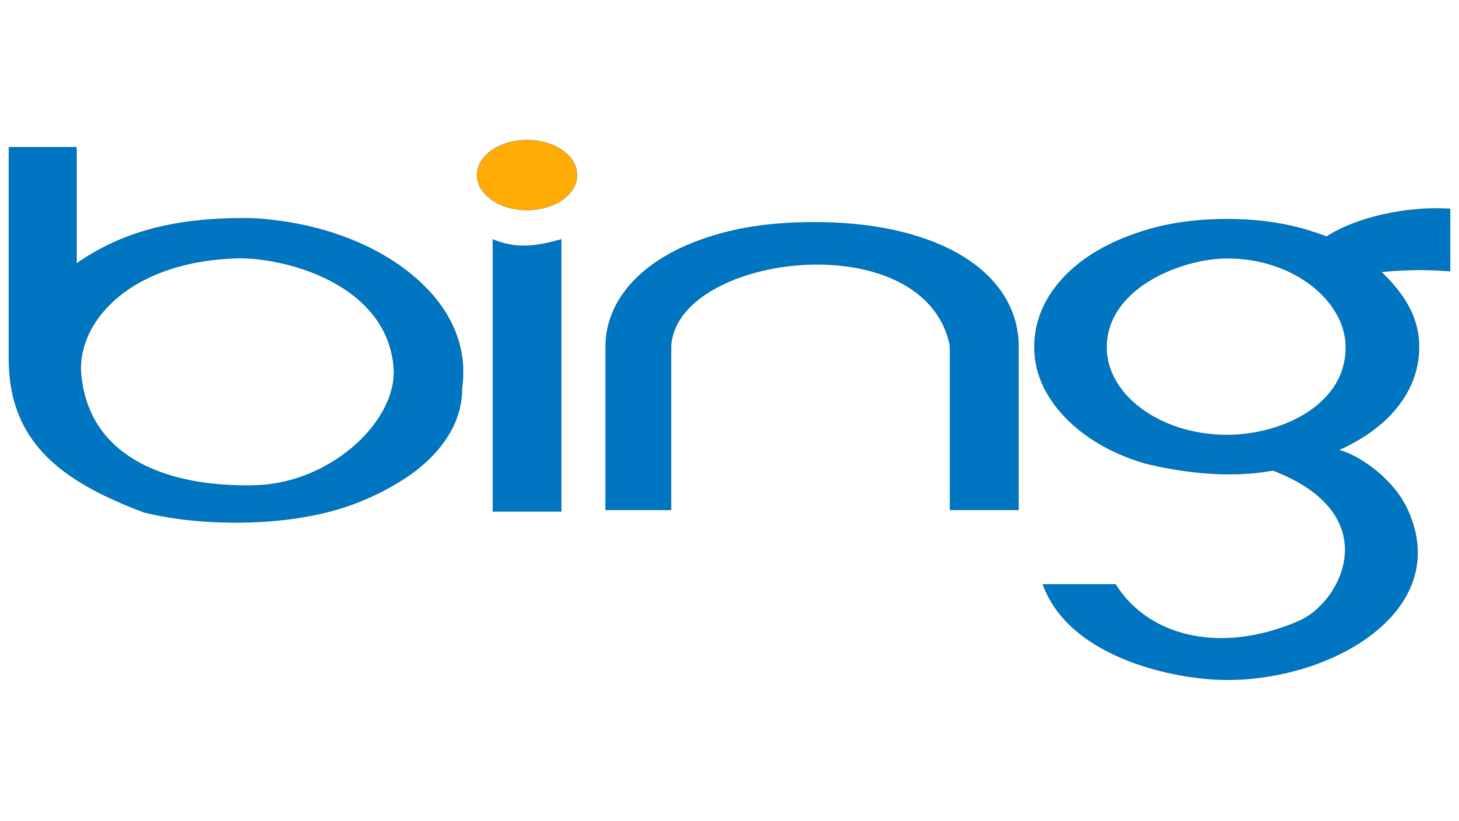 Bing sign 2009 2013